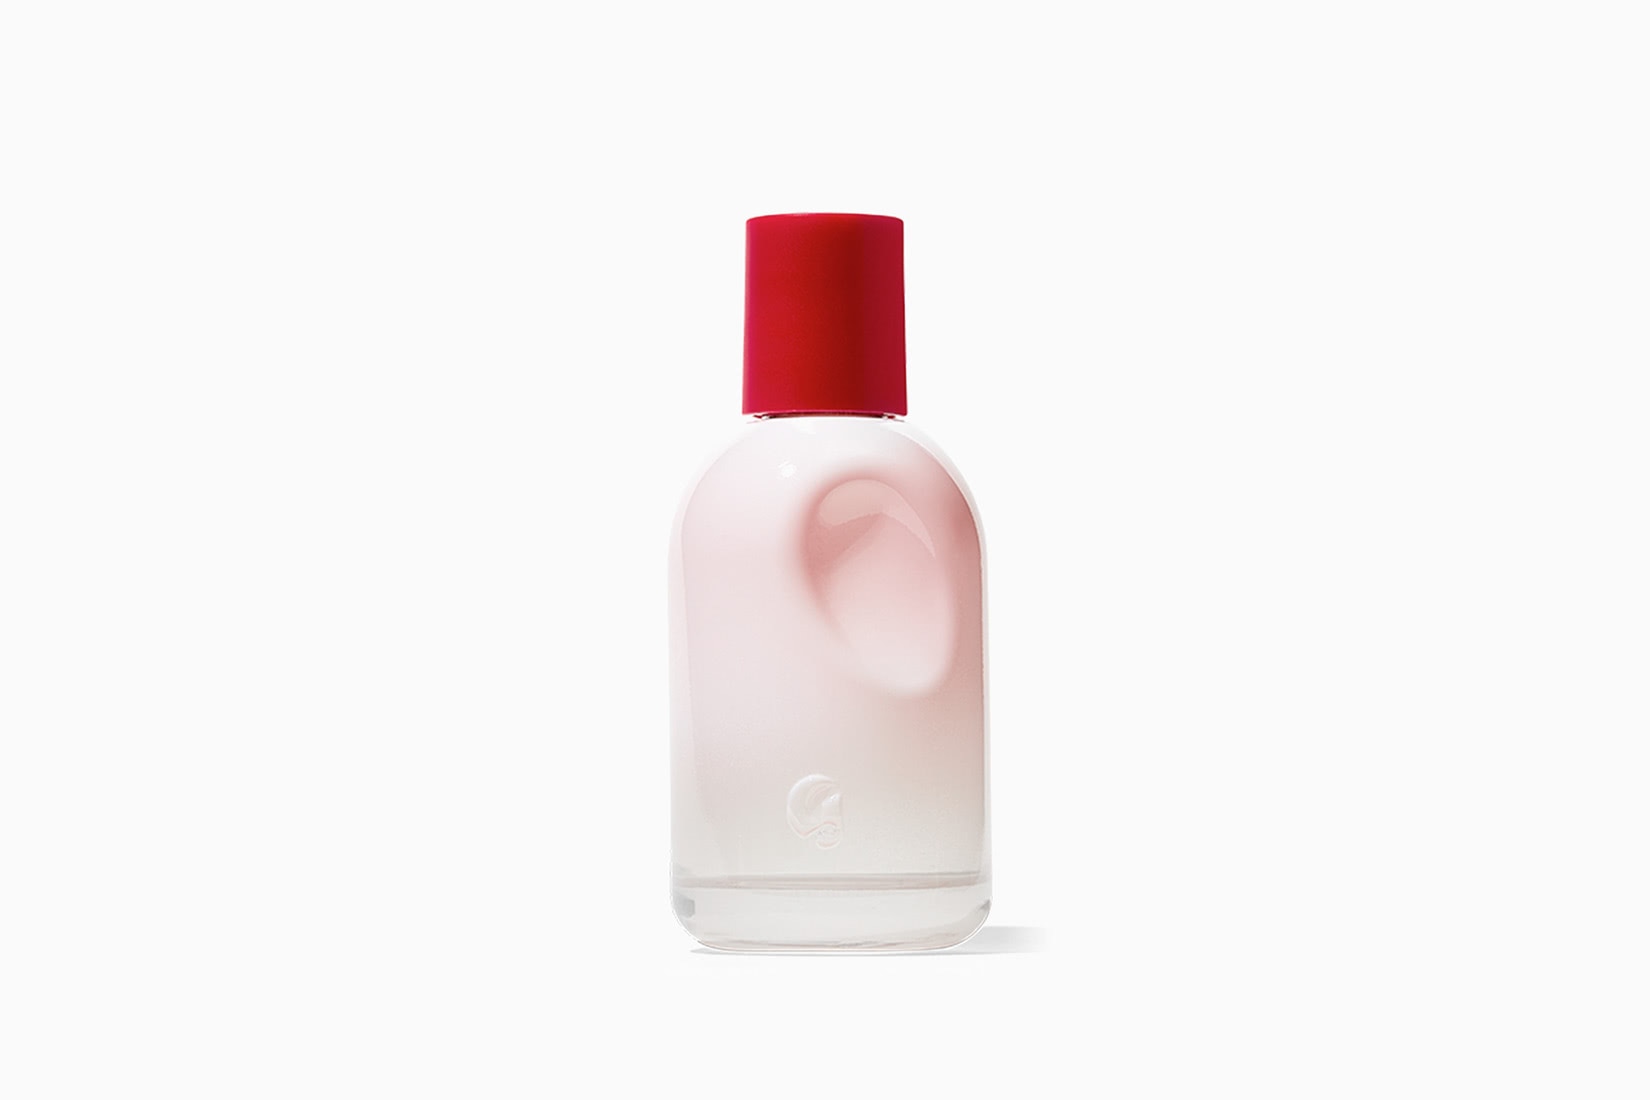 Meilleur parfum pour femme Glossier You - Luxe Digital